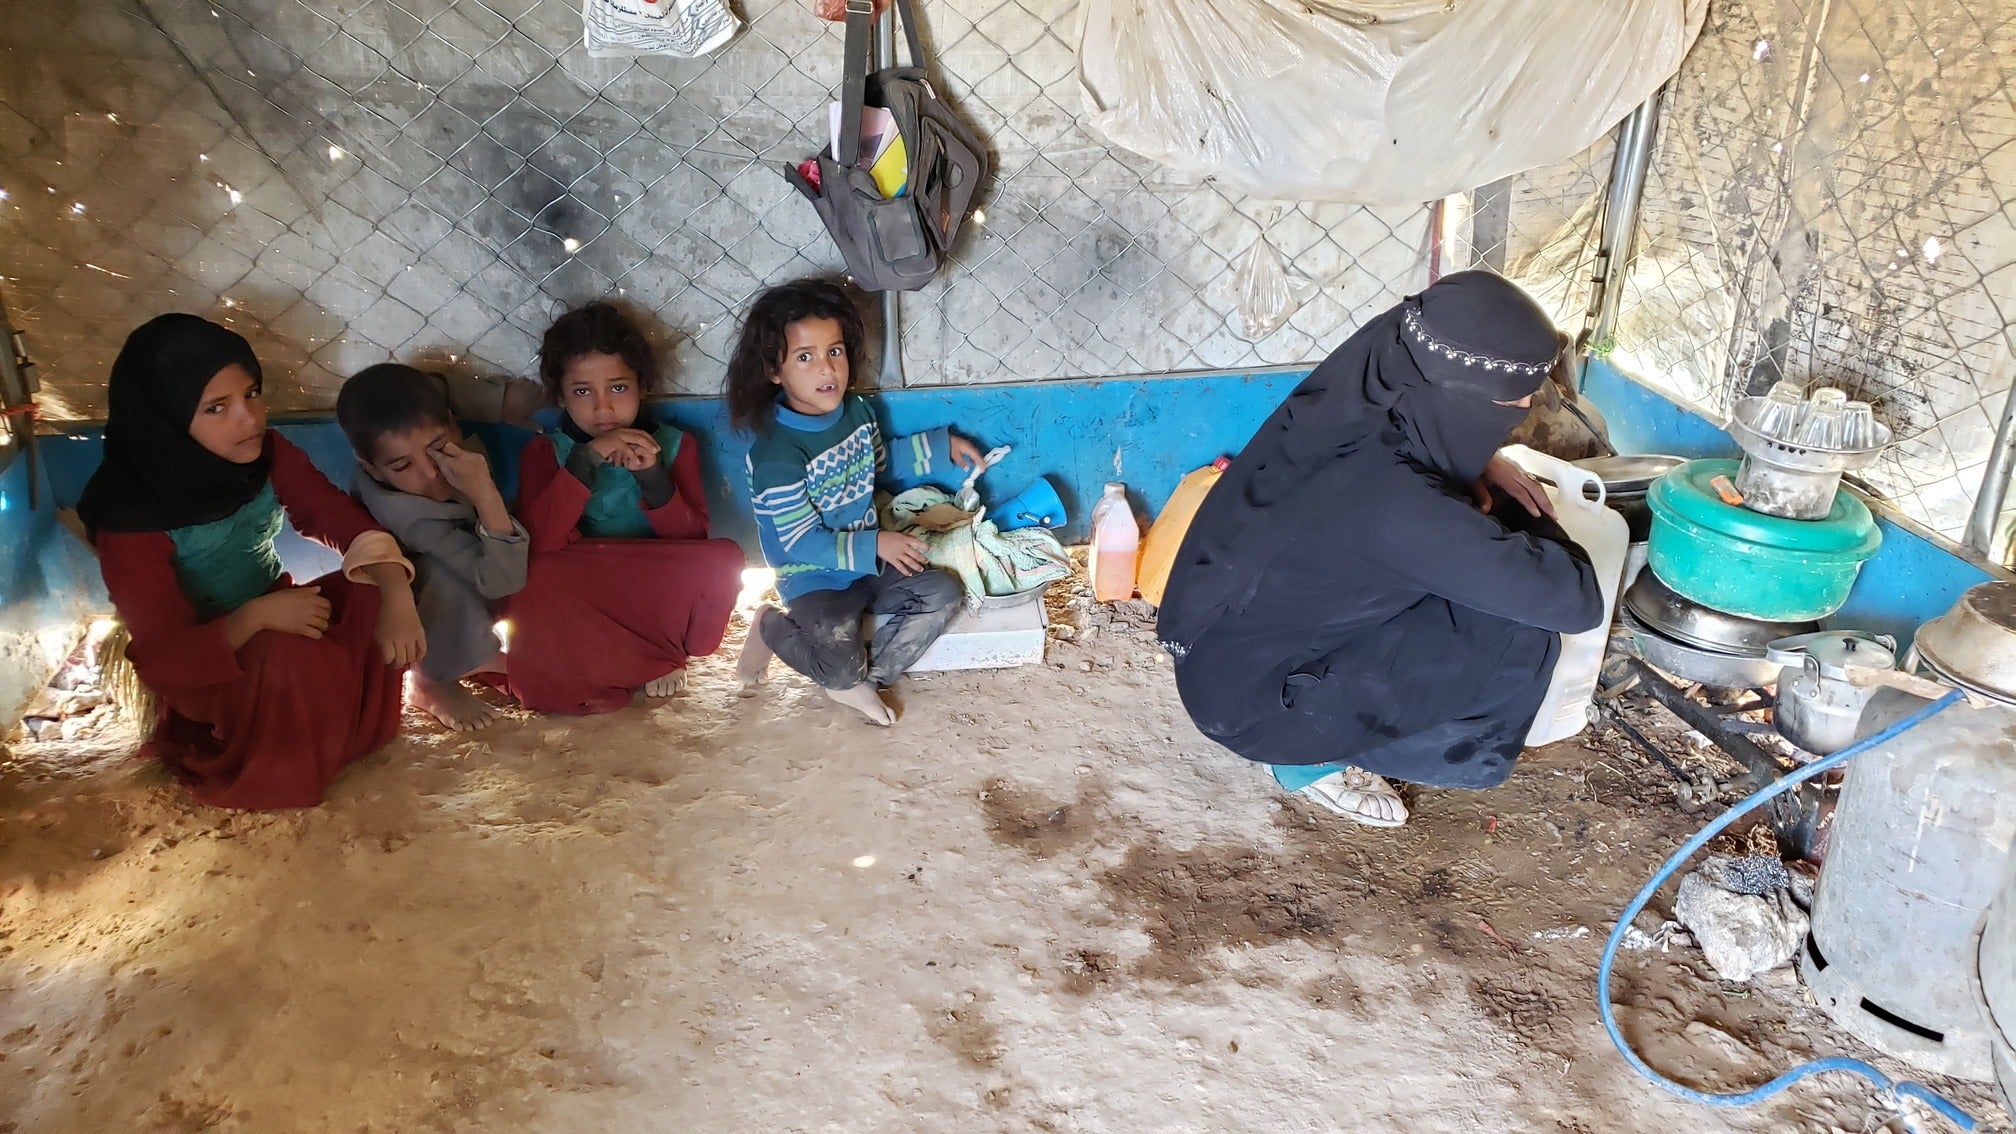 عائلة نازحة في خيمتها في مخيم السويدة للنازحين في محافظة مأرب في شمال اليمن، فبراير/شباط 2020. هُجِّرت العائلة مرتين، وكانت المرة الثانية بعد الفرار من مأرب هربا من القتال قرب العاصمة صنعاء.